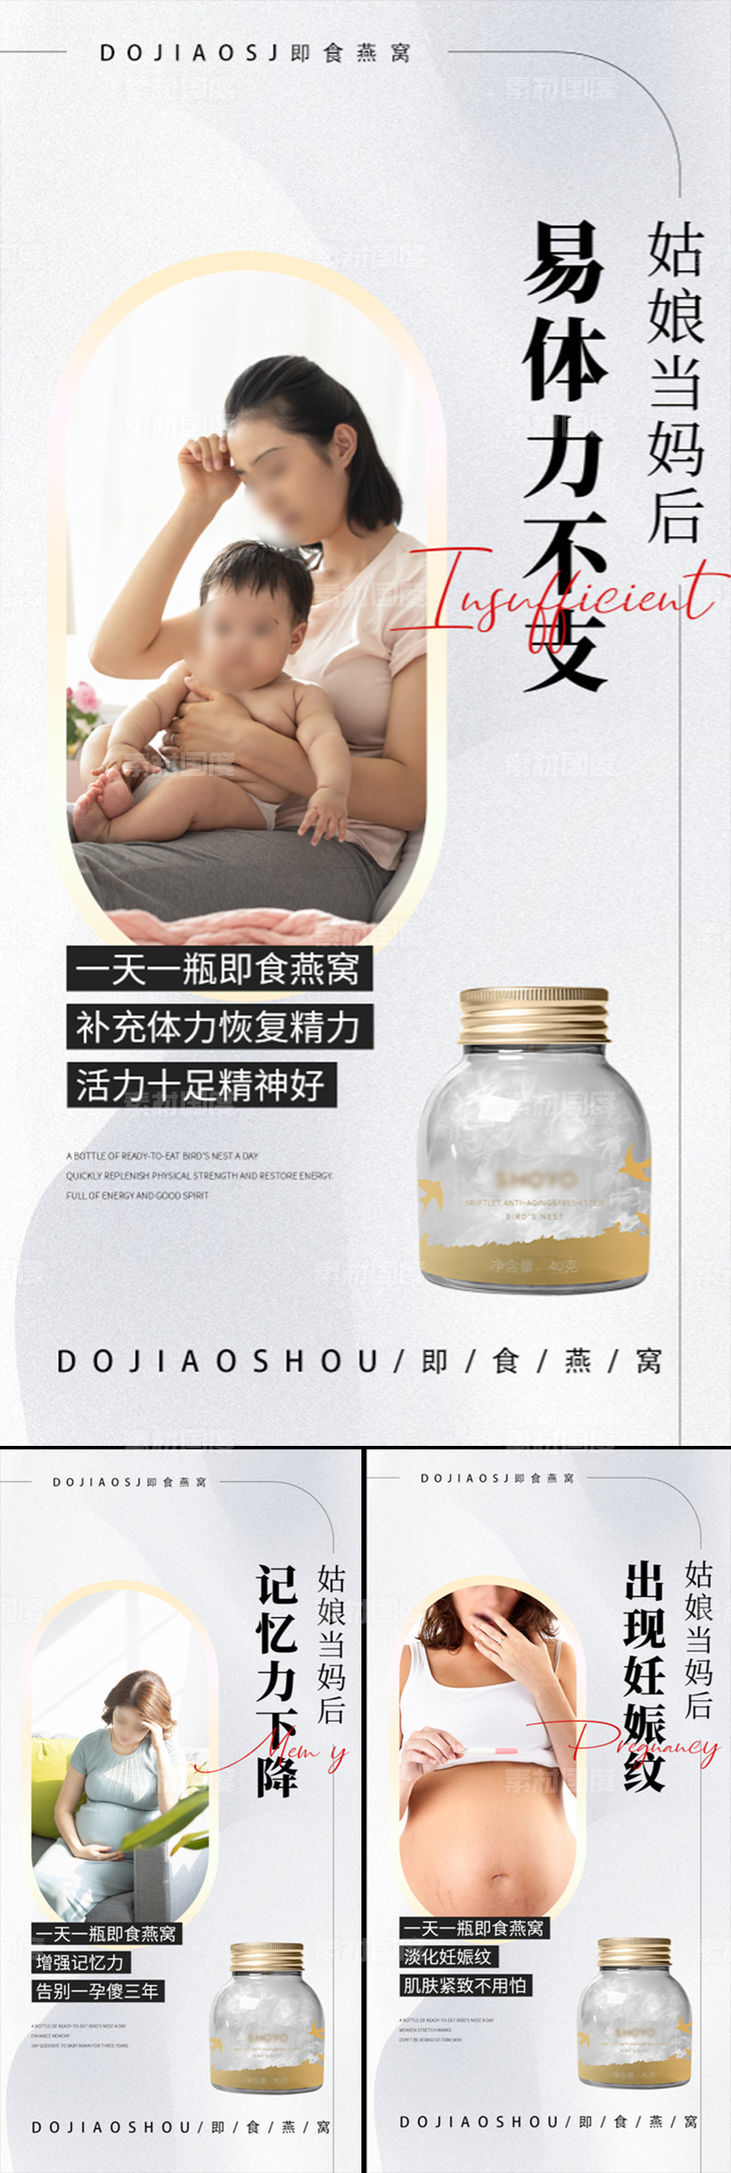 燕窝孕妇保健品微商圈图海报